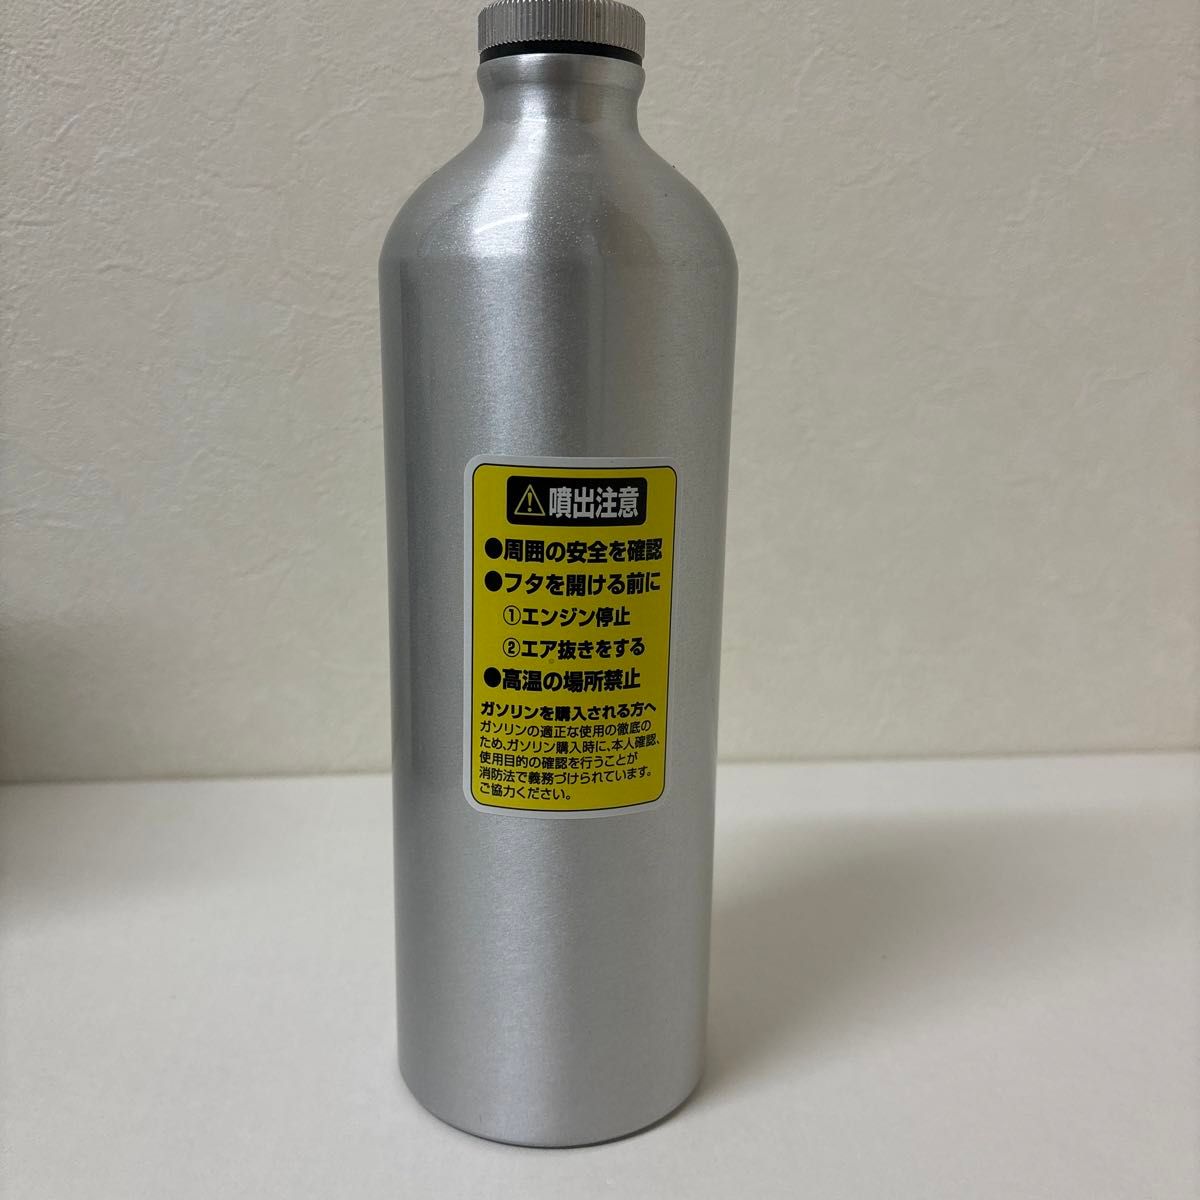 メルテック ガソリン携行缶 アルミボトルタイプ 1L Meltec 消防法適合品 アルミニウム 厚み0.8mm 収納ケース付